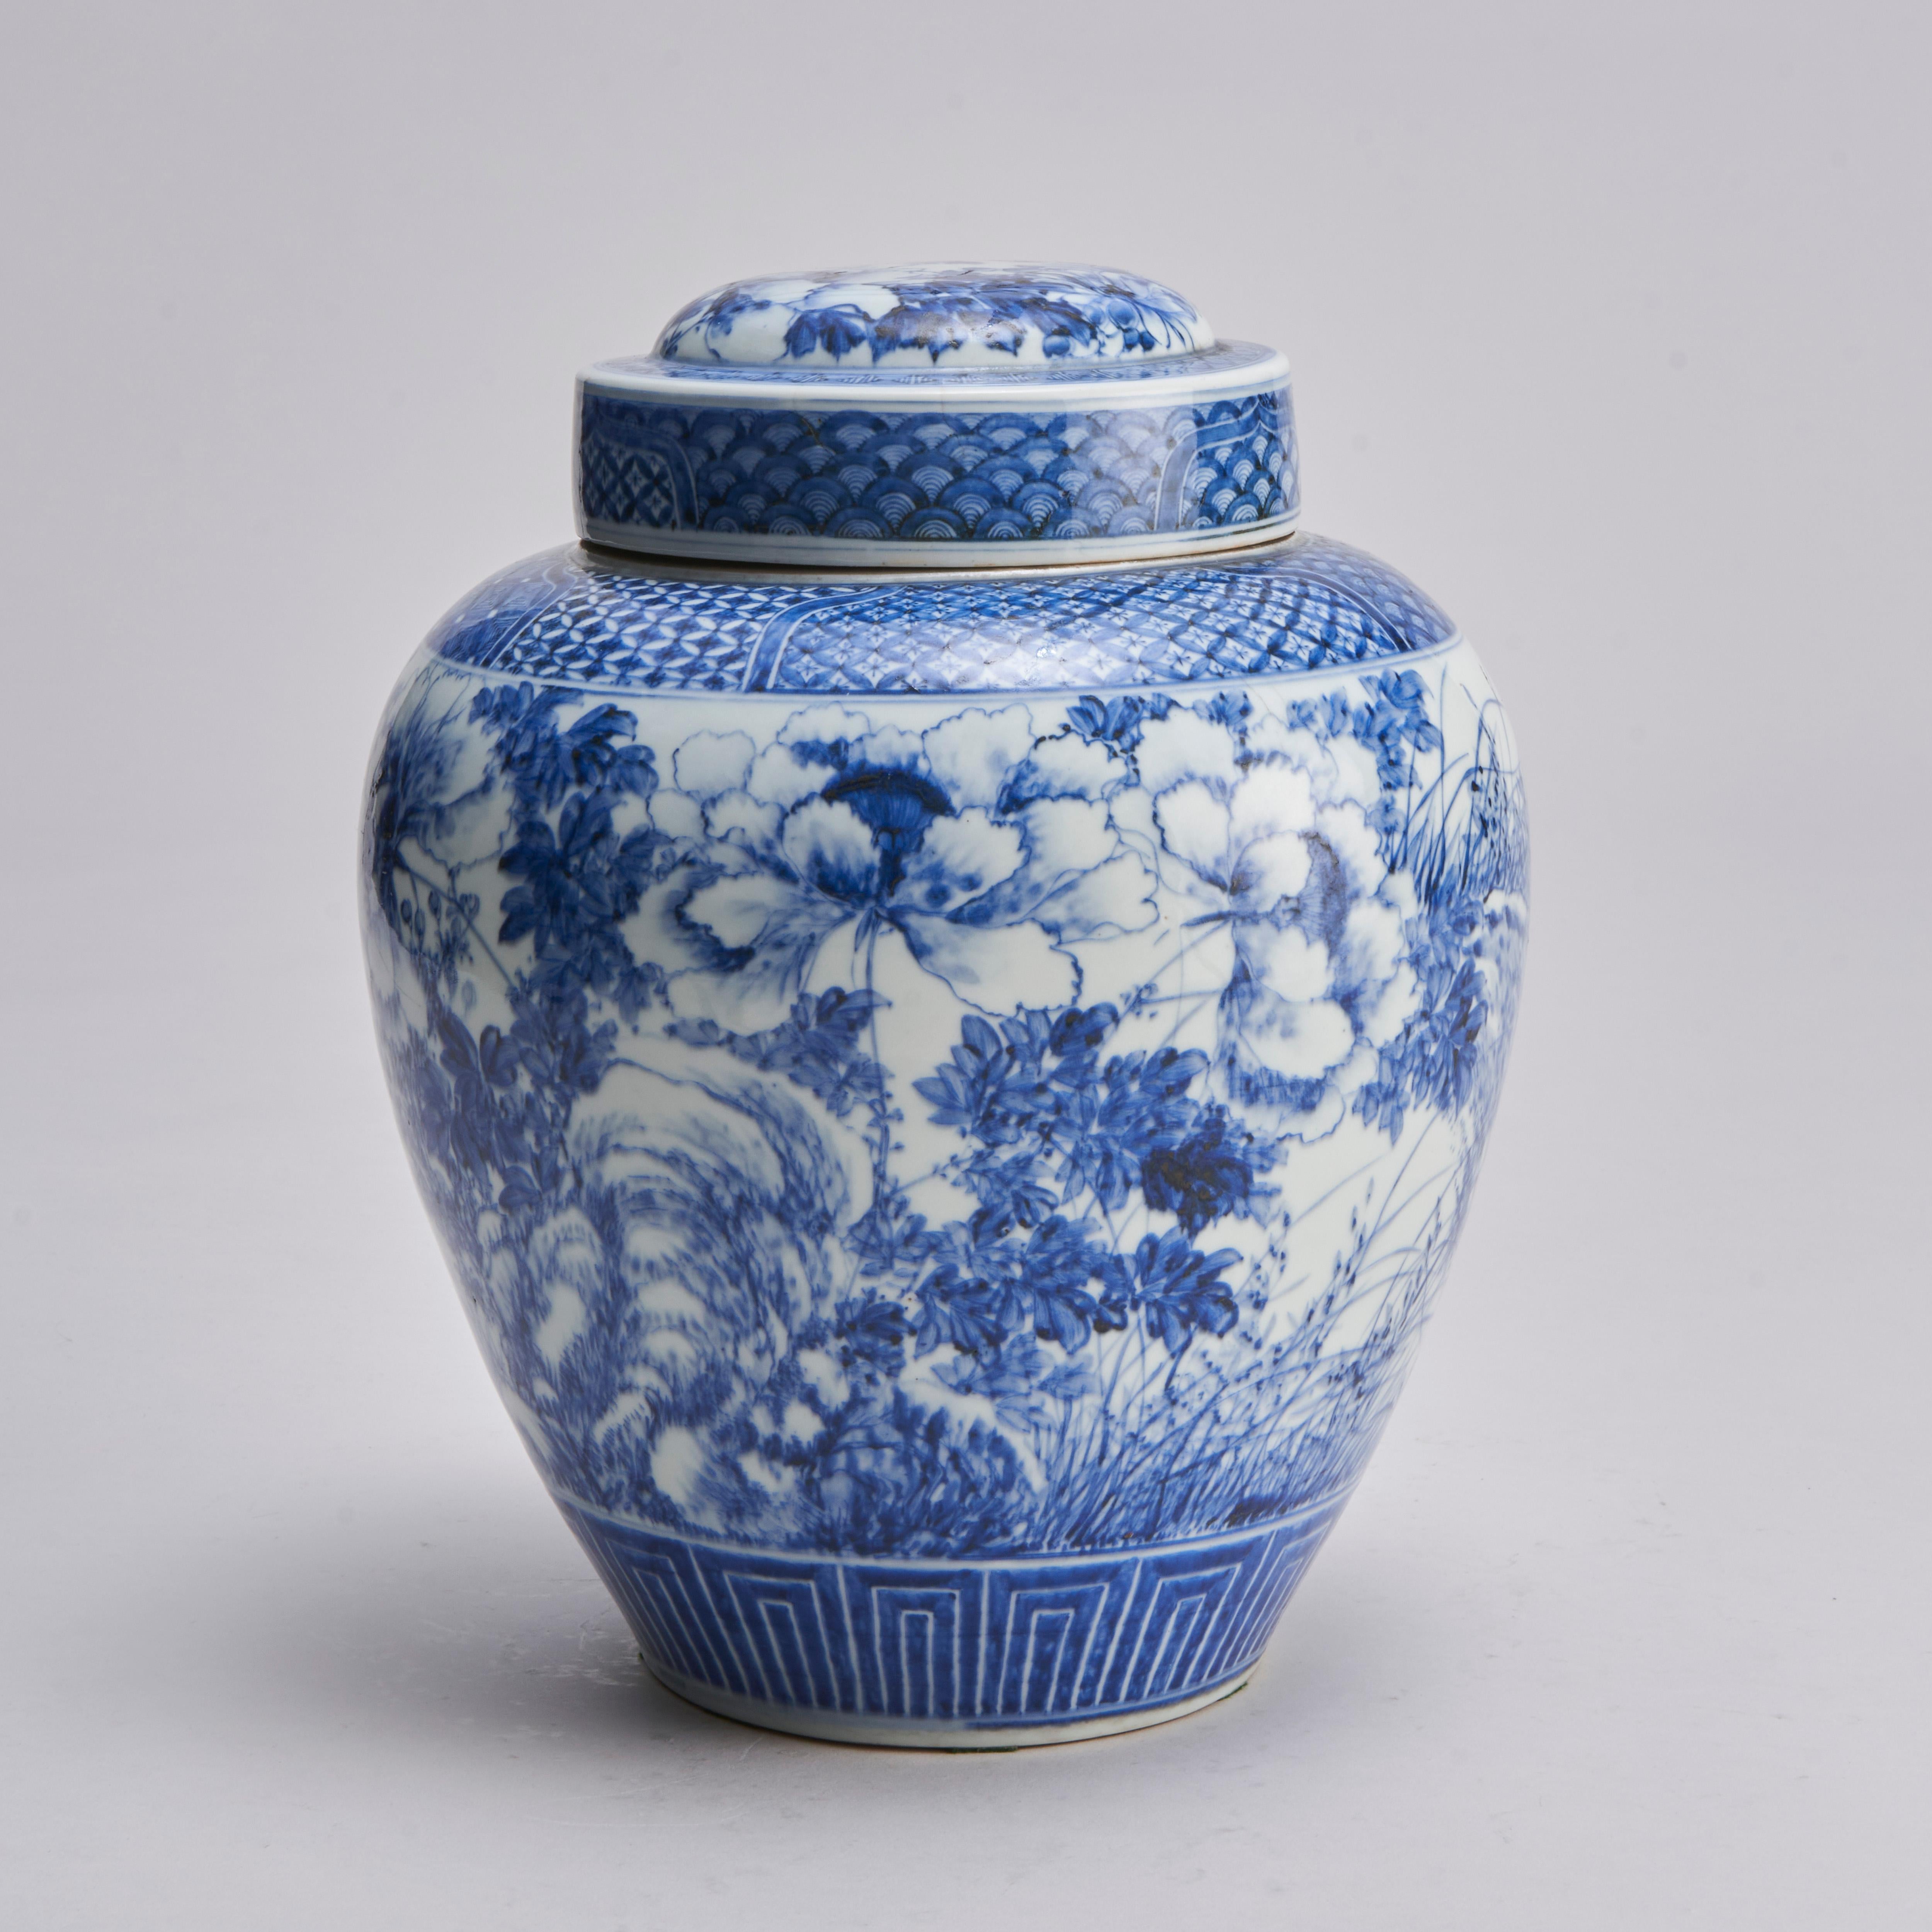 Rare exemple de pot à gingembre japonais bleu et blanc du 19e siècle, avec couvercle d'origine et bouchon intérieur avec pommeau décoratif en forme de pêche.

Le vase lui-même est décoré d'images fluides de grandes pivoines en fleurs et d'herbes qui